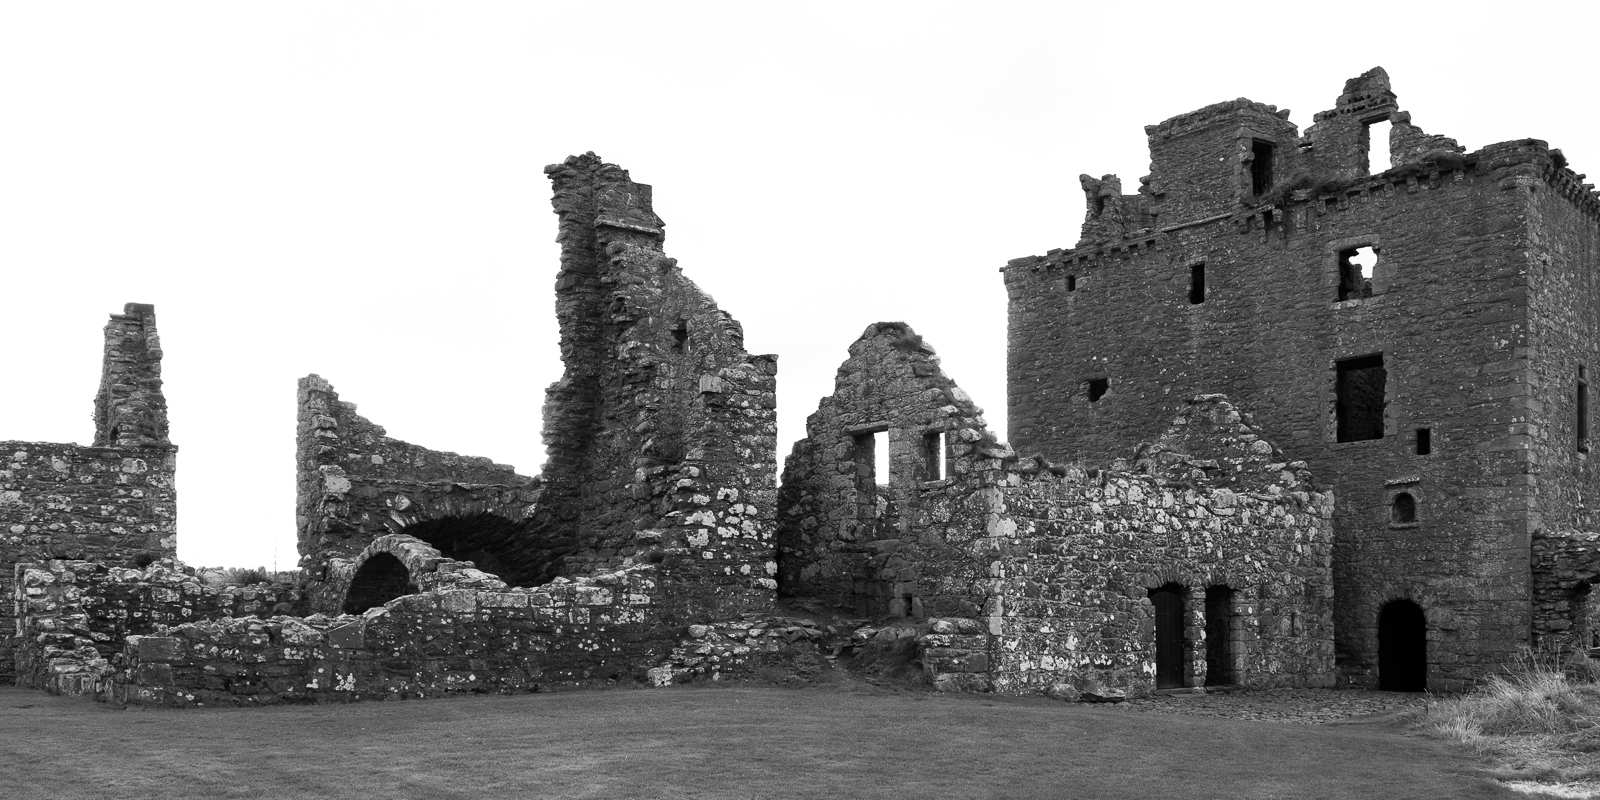 Dunnottor Castle